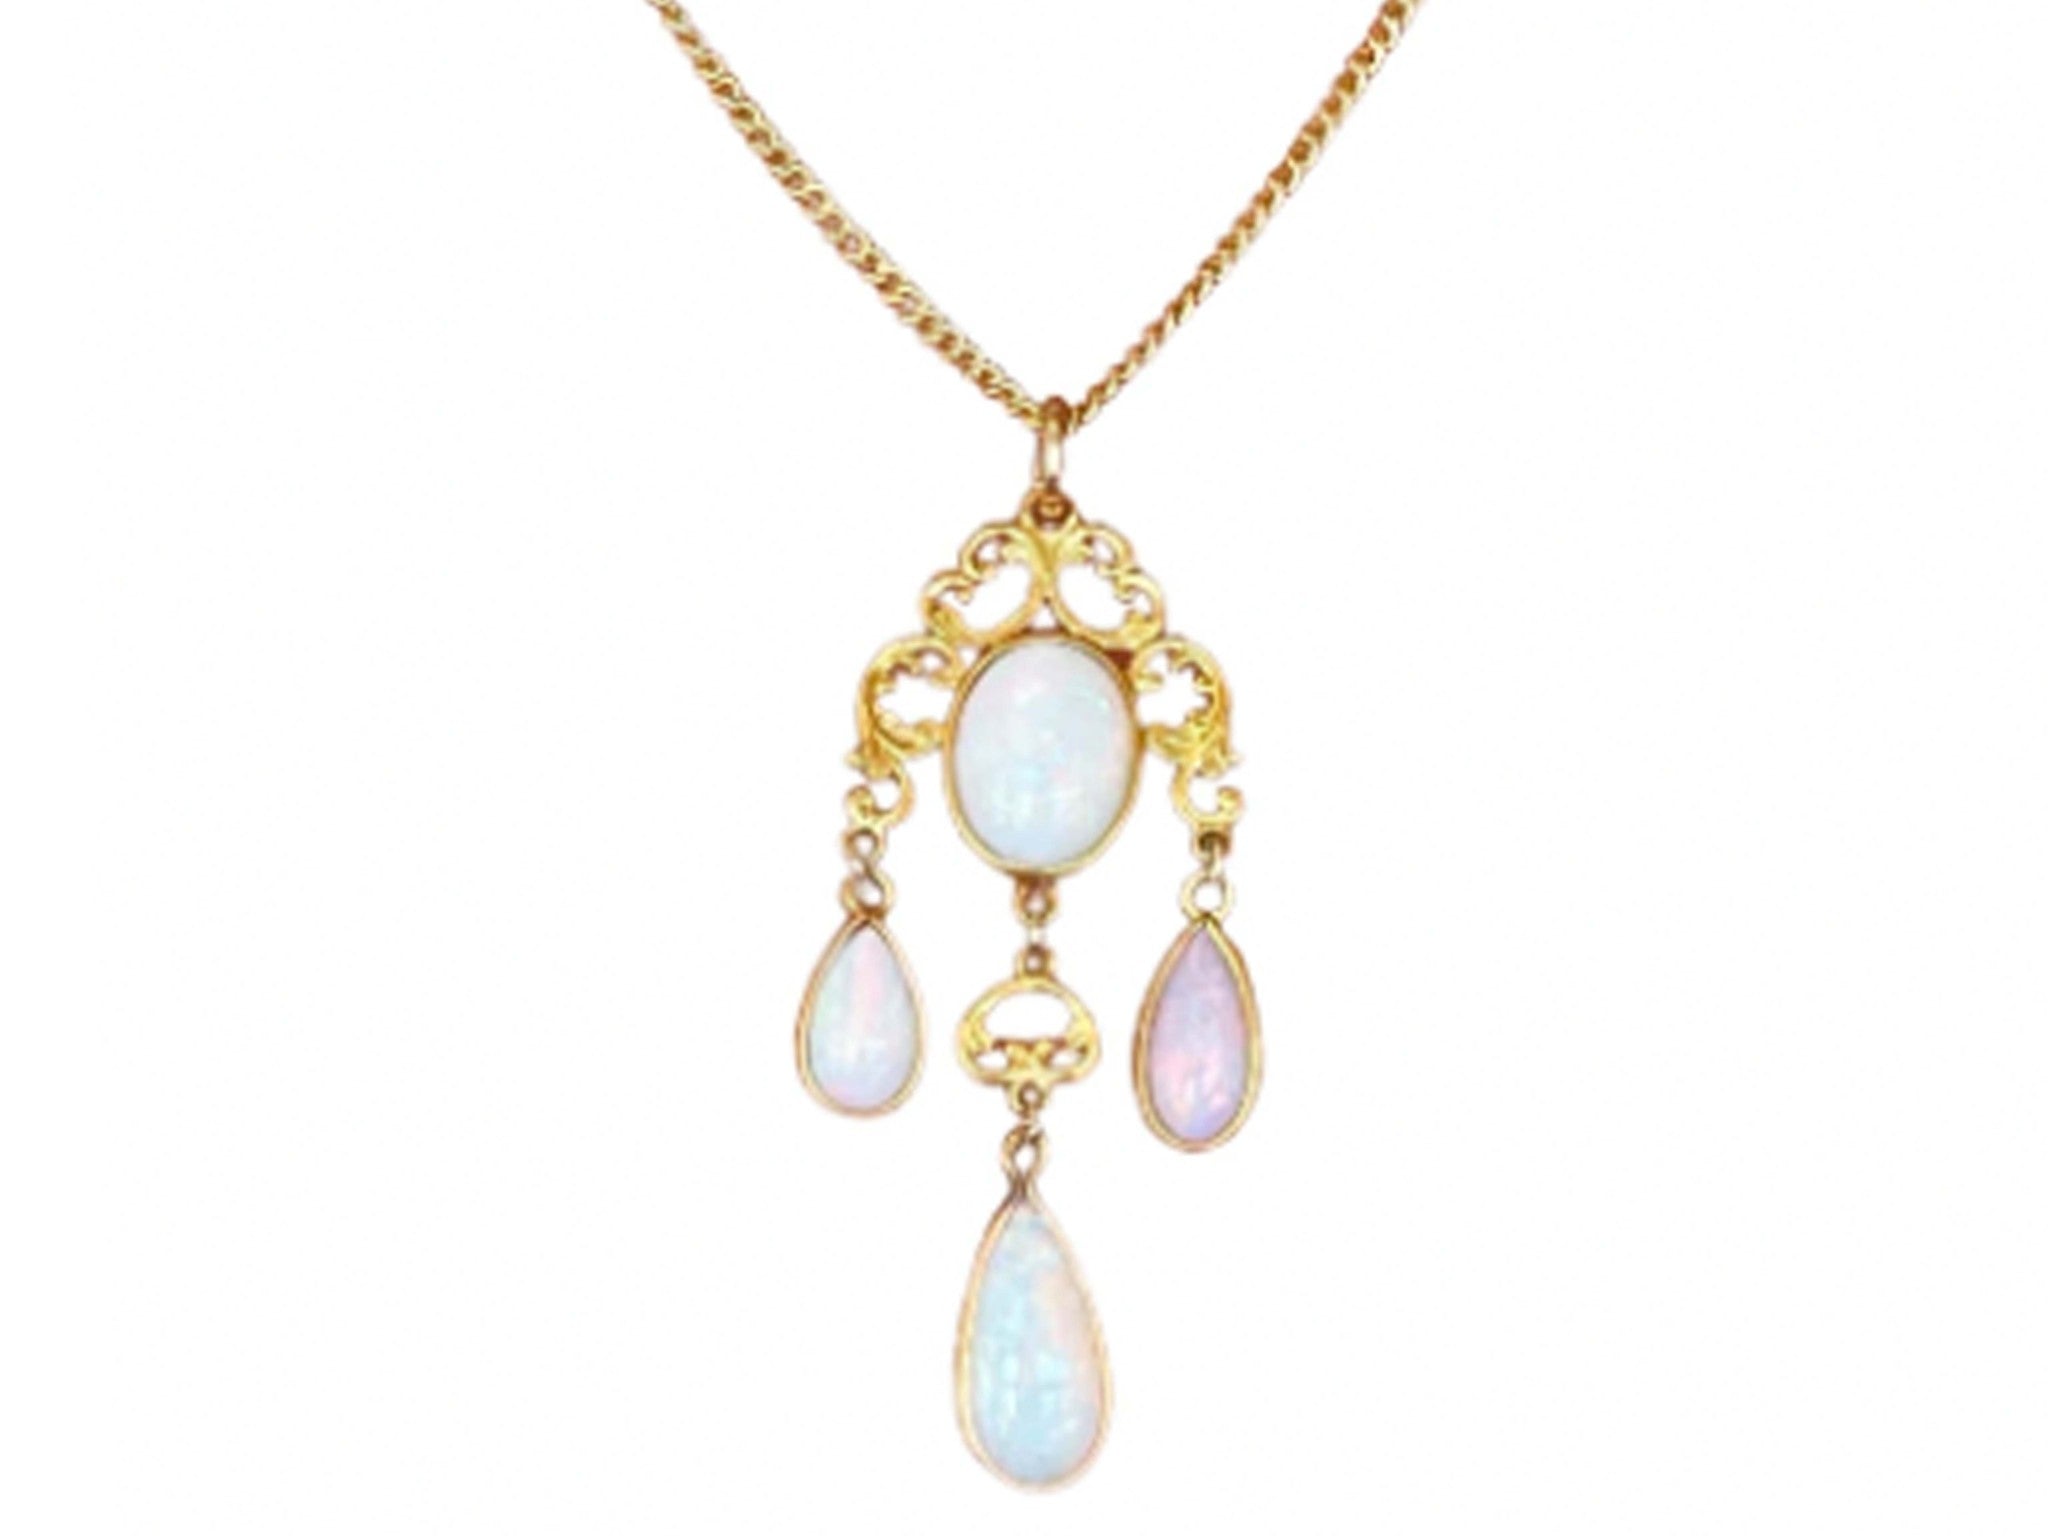 Vintage 4 Opal Drop Pendant Necklace 14k Yellow Gold